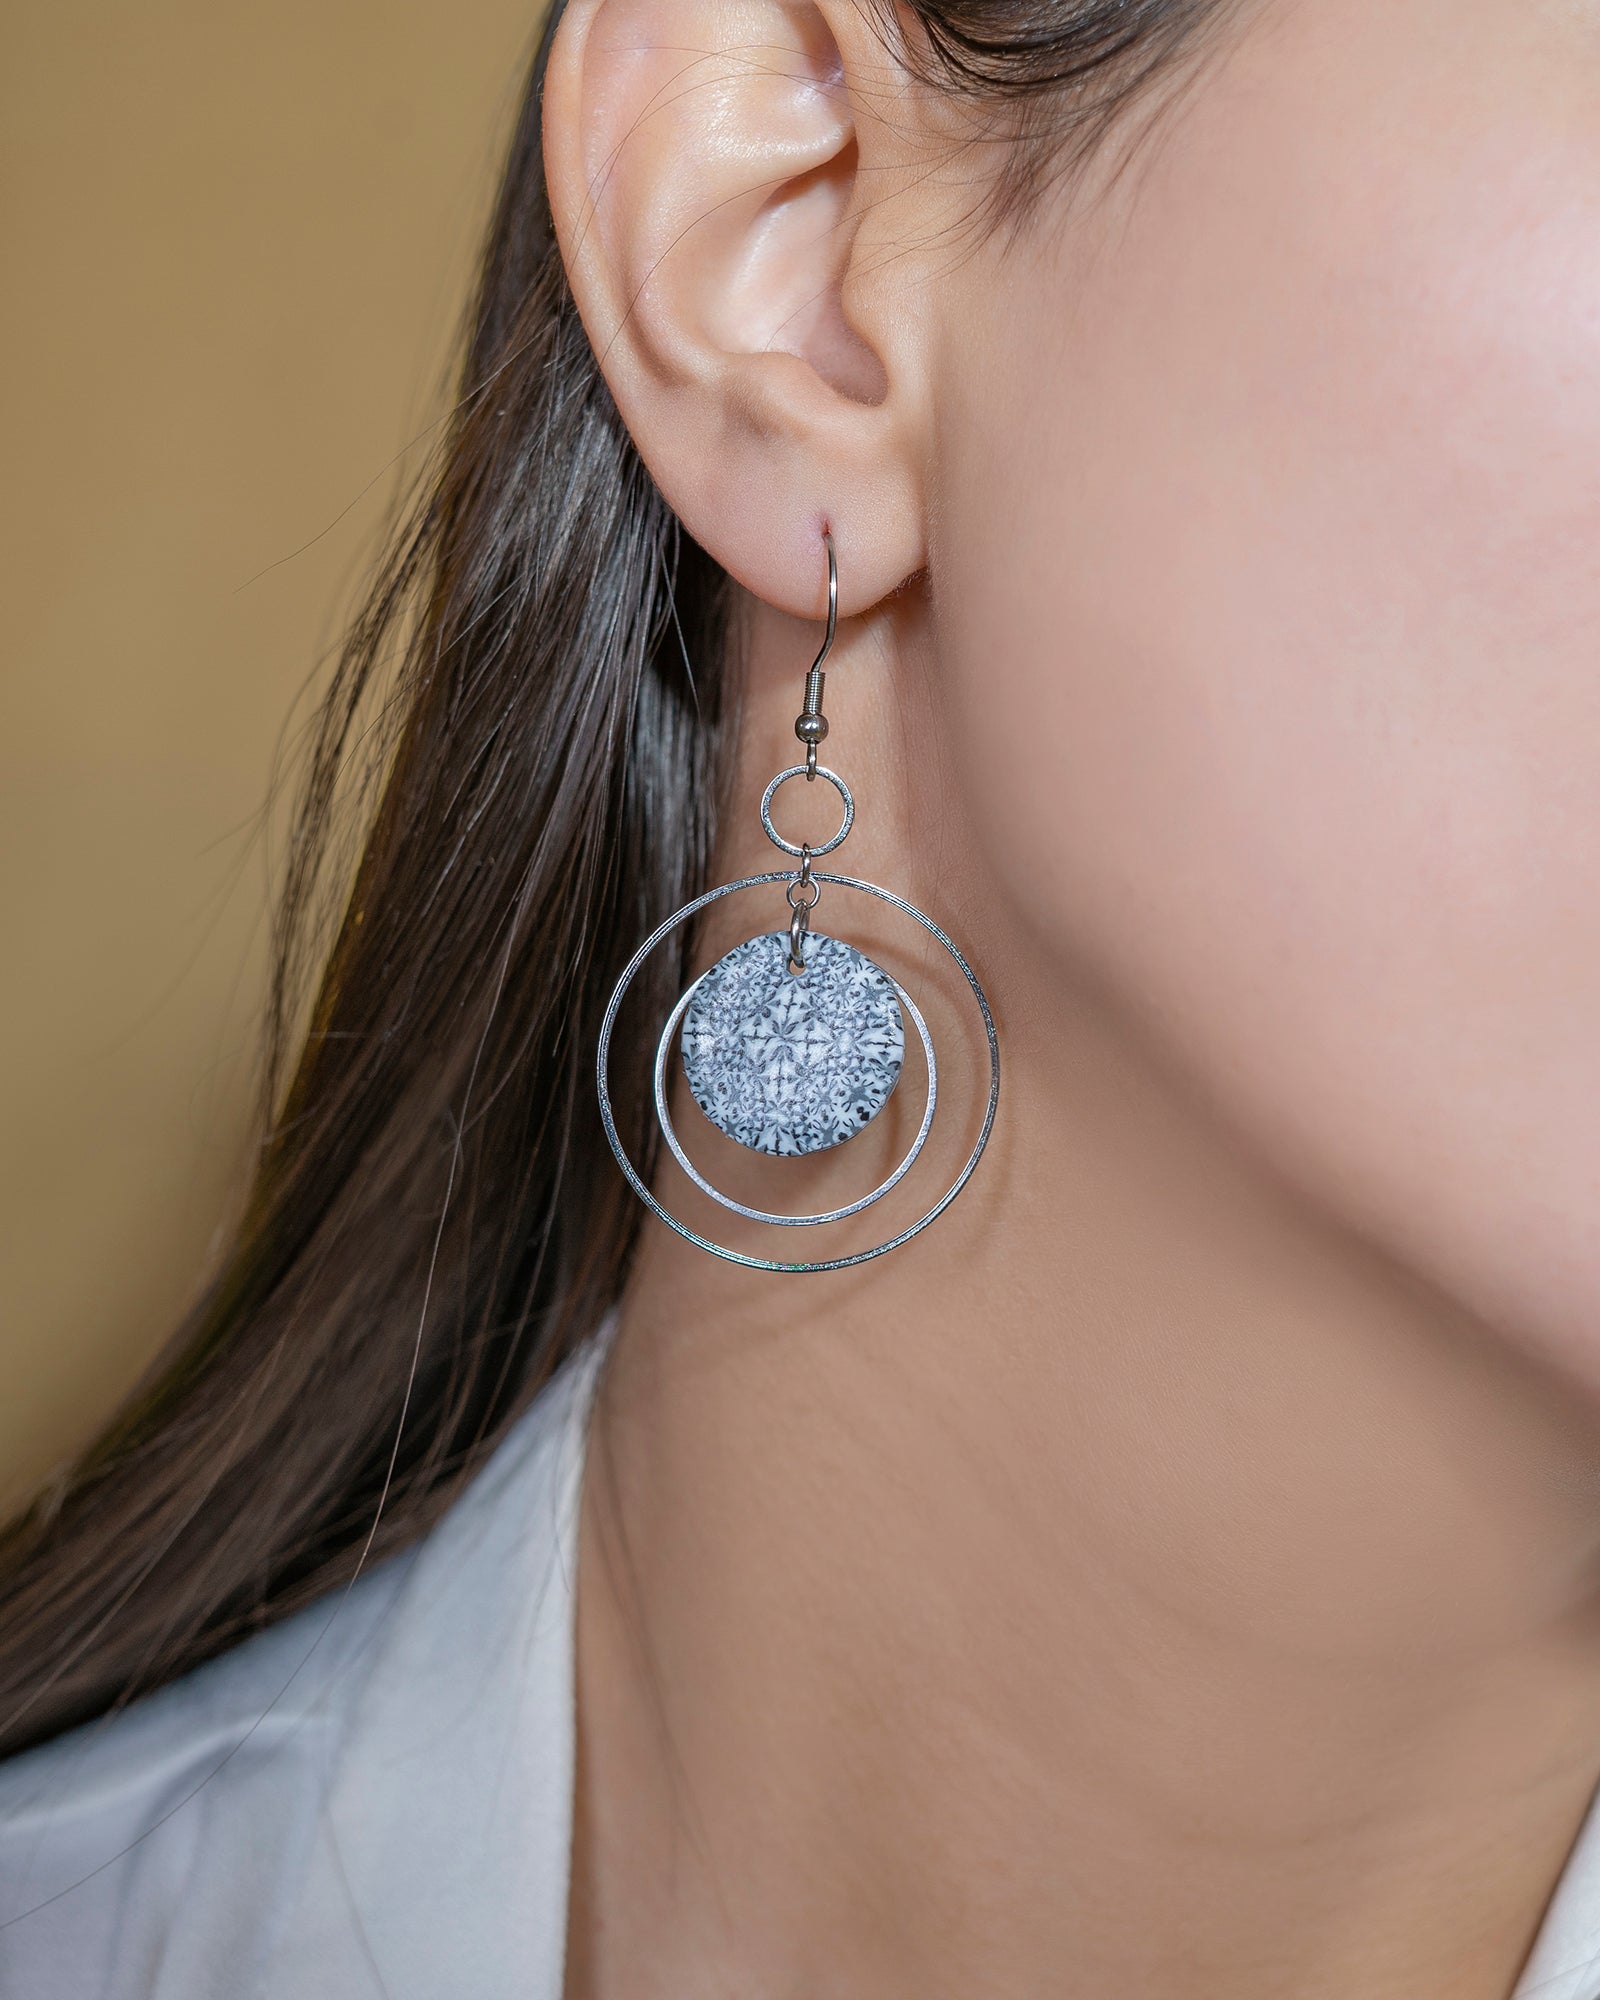 Boucles d’oreilles pendantes fantaisies pour femmes avec plusieurs anneaux et un rond plat à motifs unique de couleurs bleu et blanc